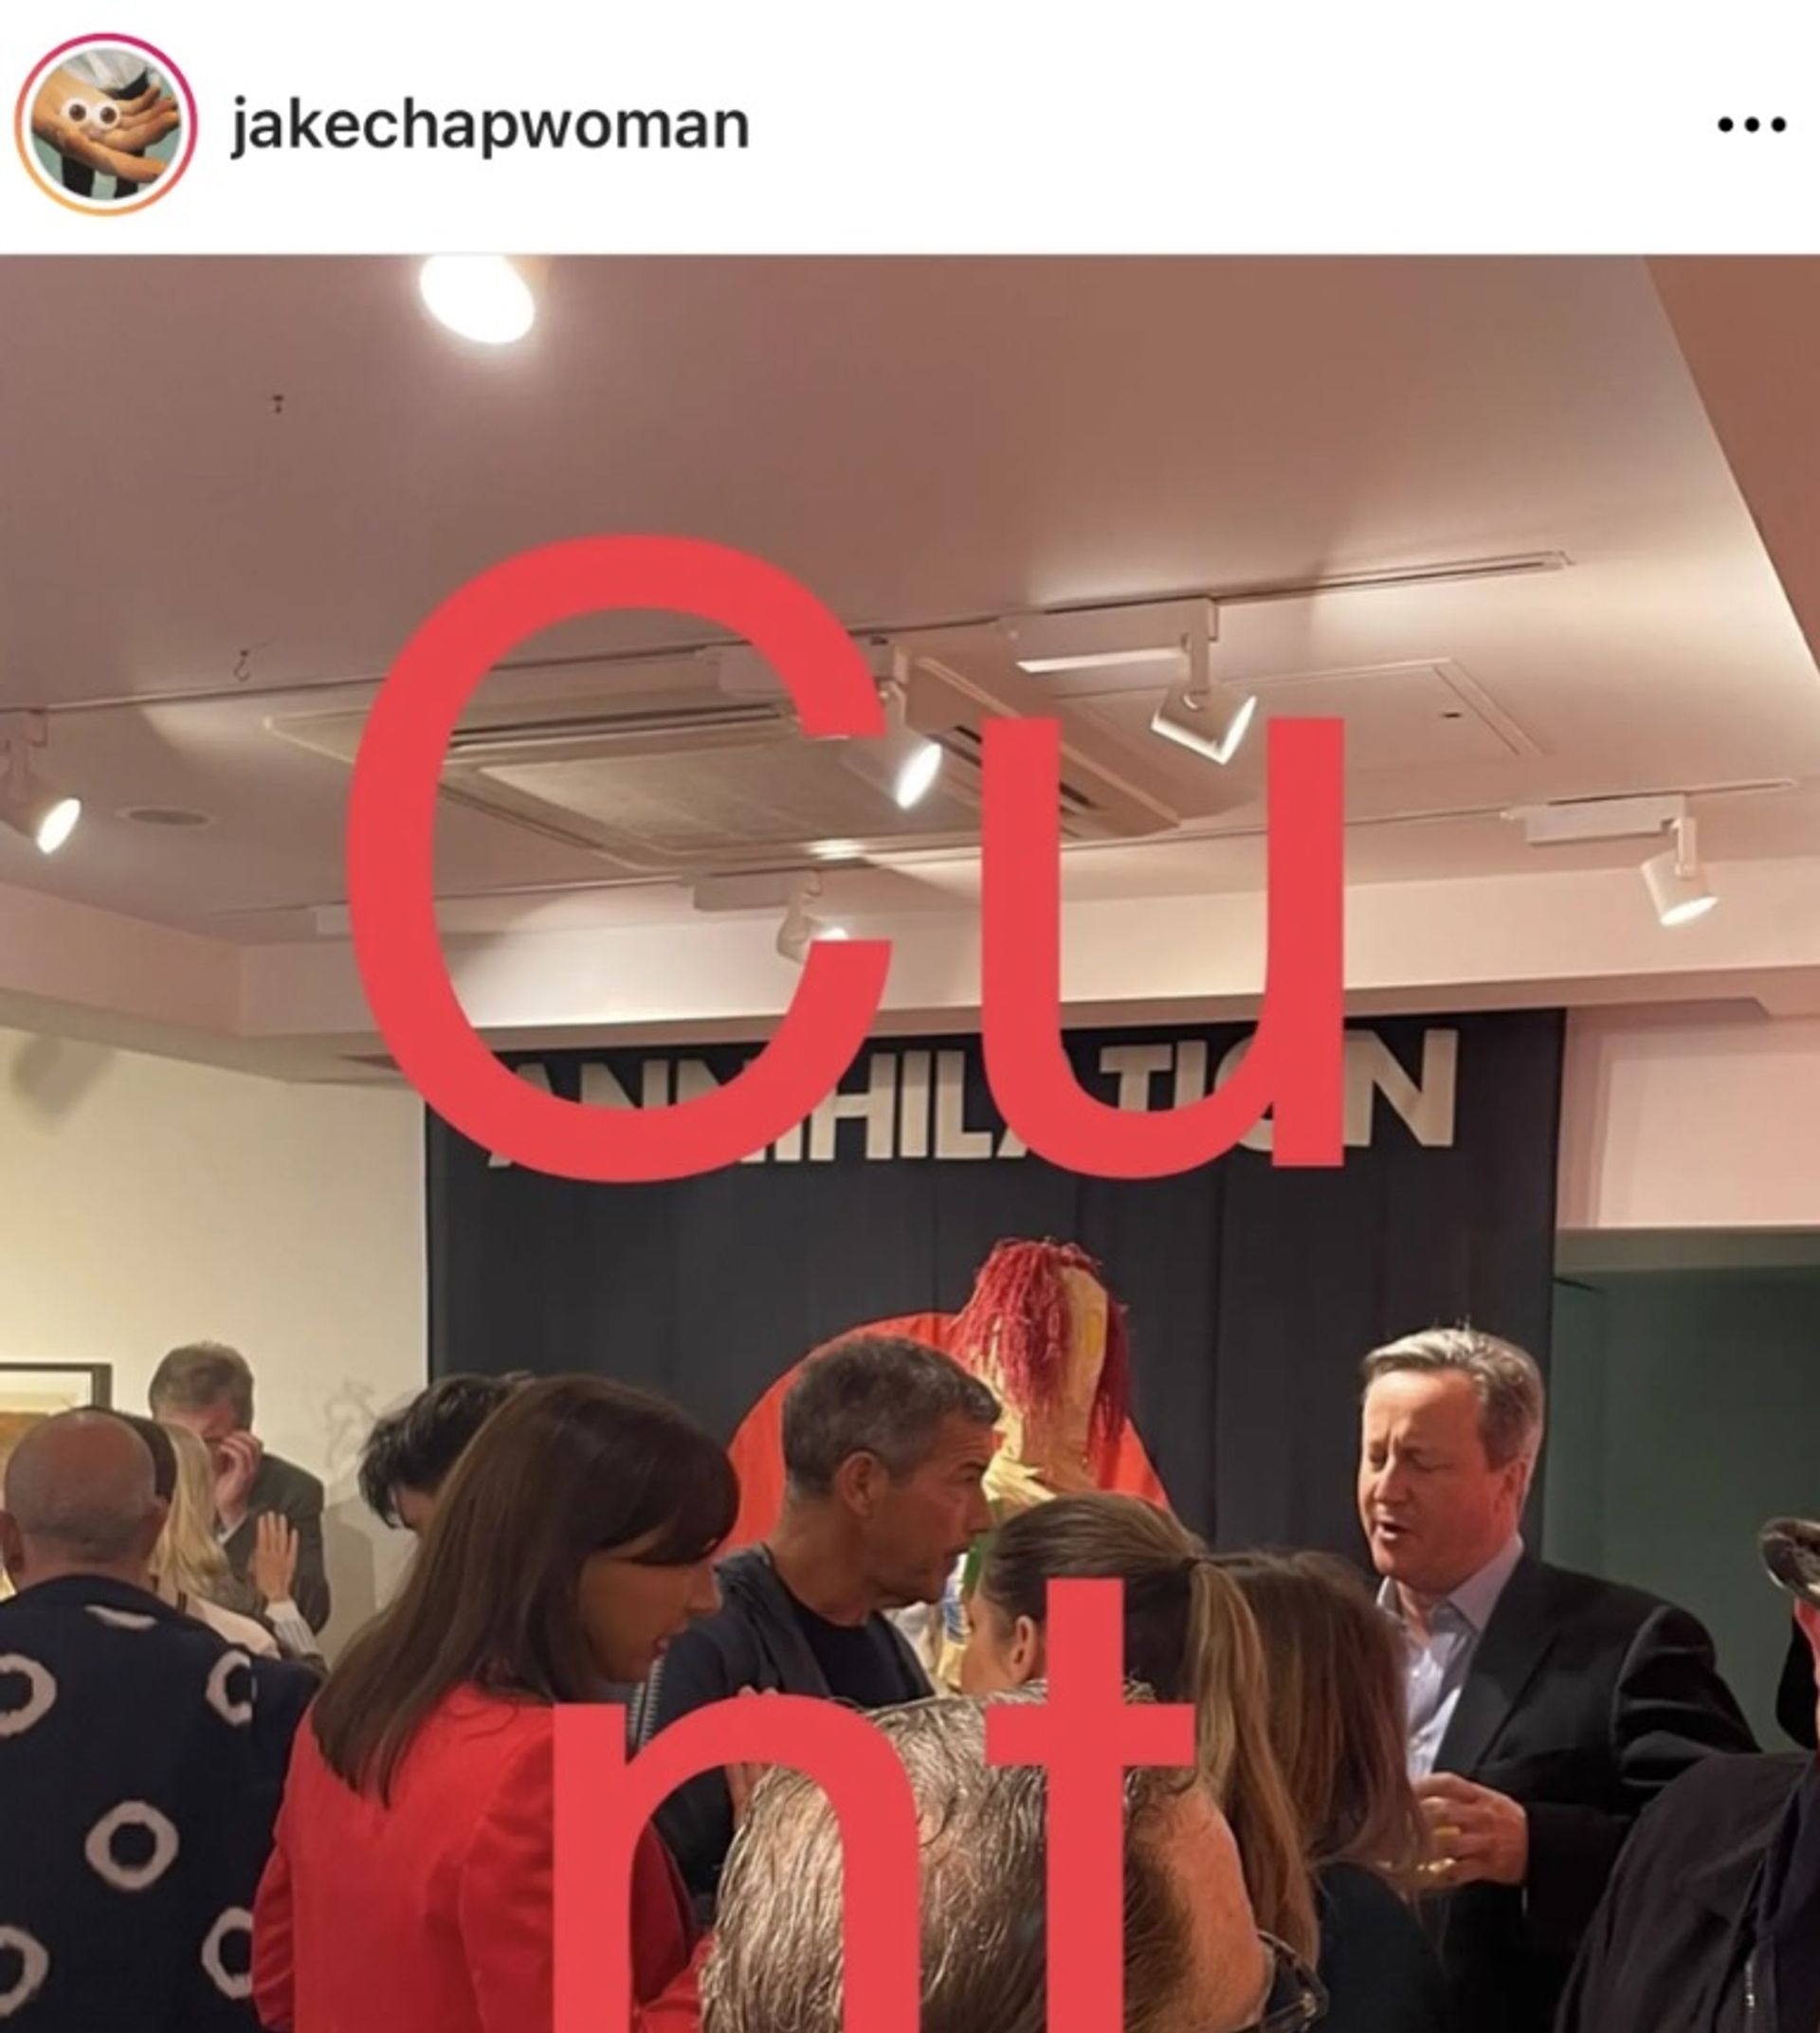 ג'ייק צ'פמן פרסם תמונה באינסטגרם כדי להביע את מורת רוחו מדיוויד קמרון שנכח בפתיחת התערוכה שלו ב-Paradise Row Projects.

באדיבות אינסטגרם